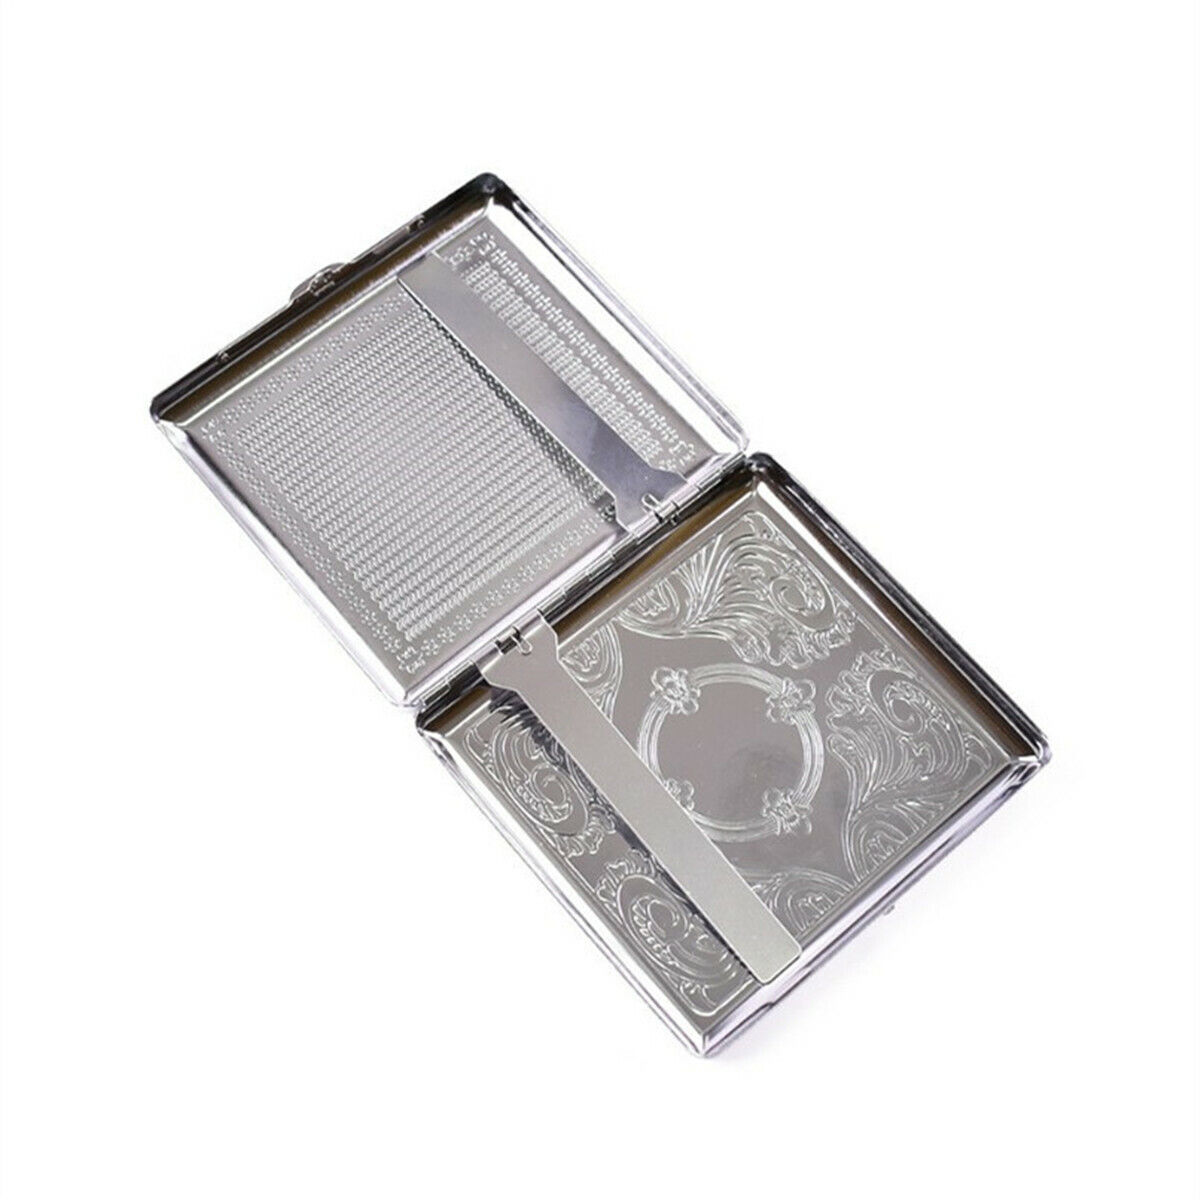 Vintage Cigarette Case Stainless Steel Metal Box Holder Tobacco Holder Pocket